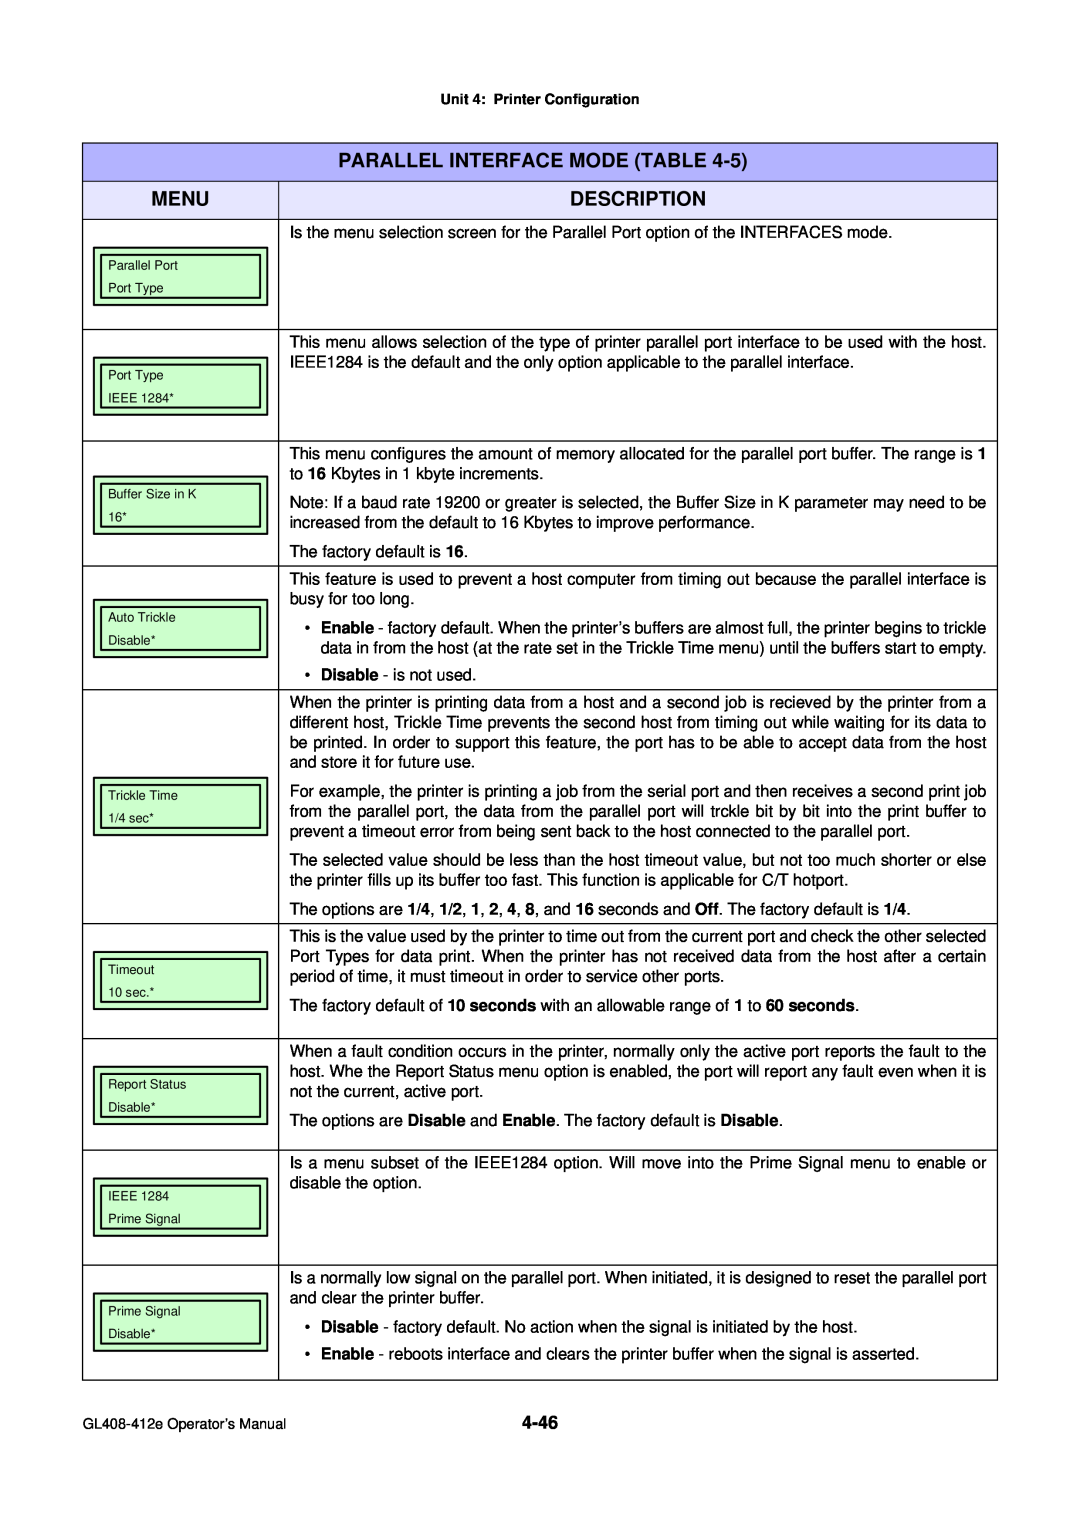 SATO GL4XXE manual Menu, Description, Parallel Interface Mode Table 